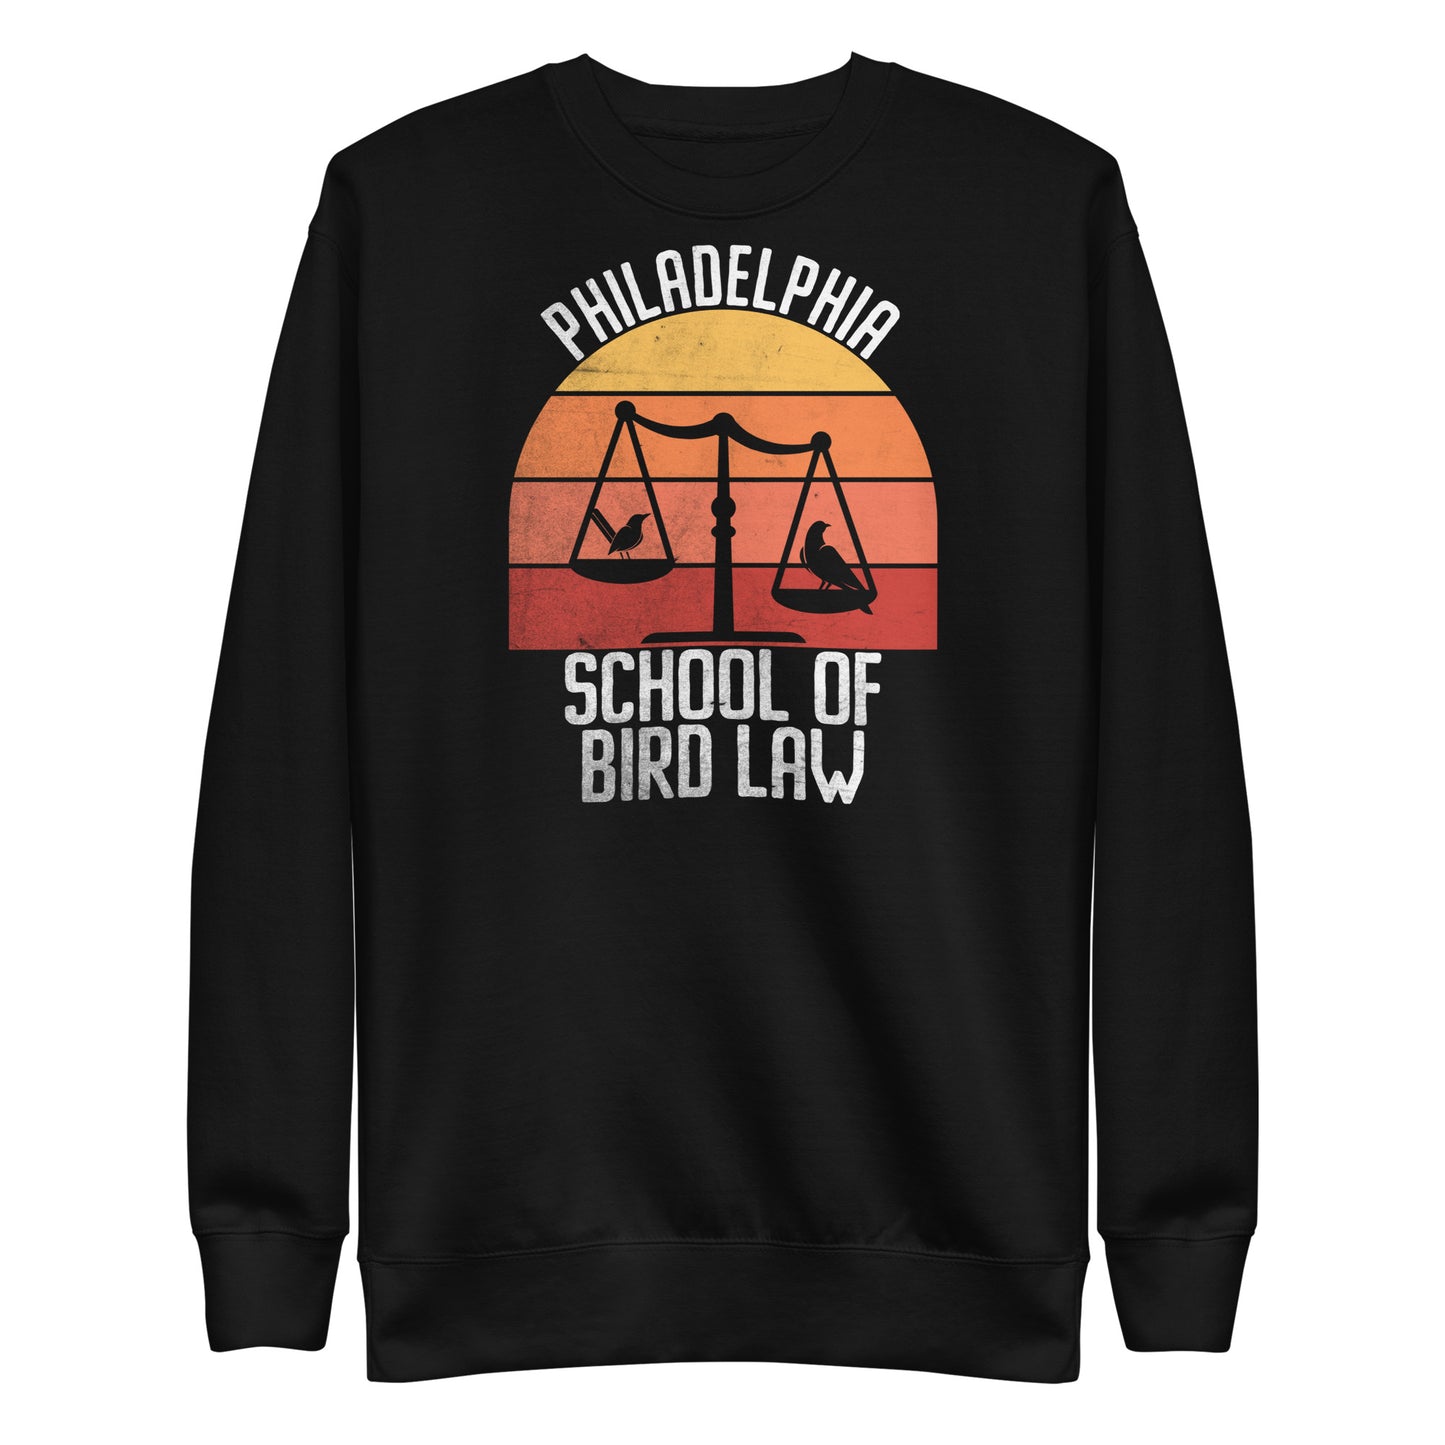 School of Bird Law Unisex Premium Sweatshirt